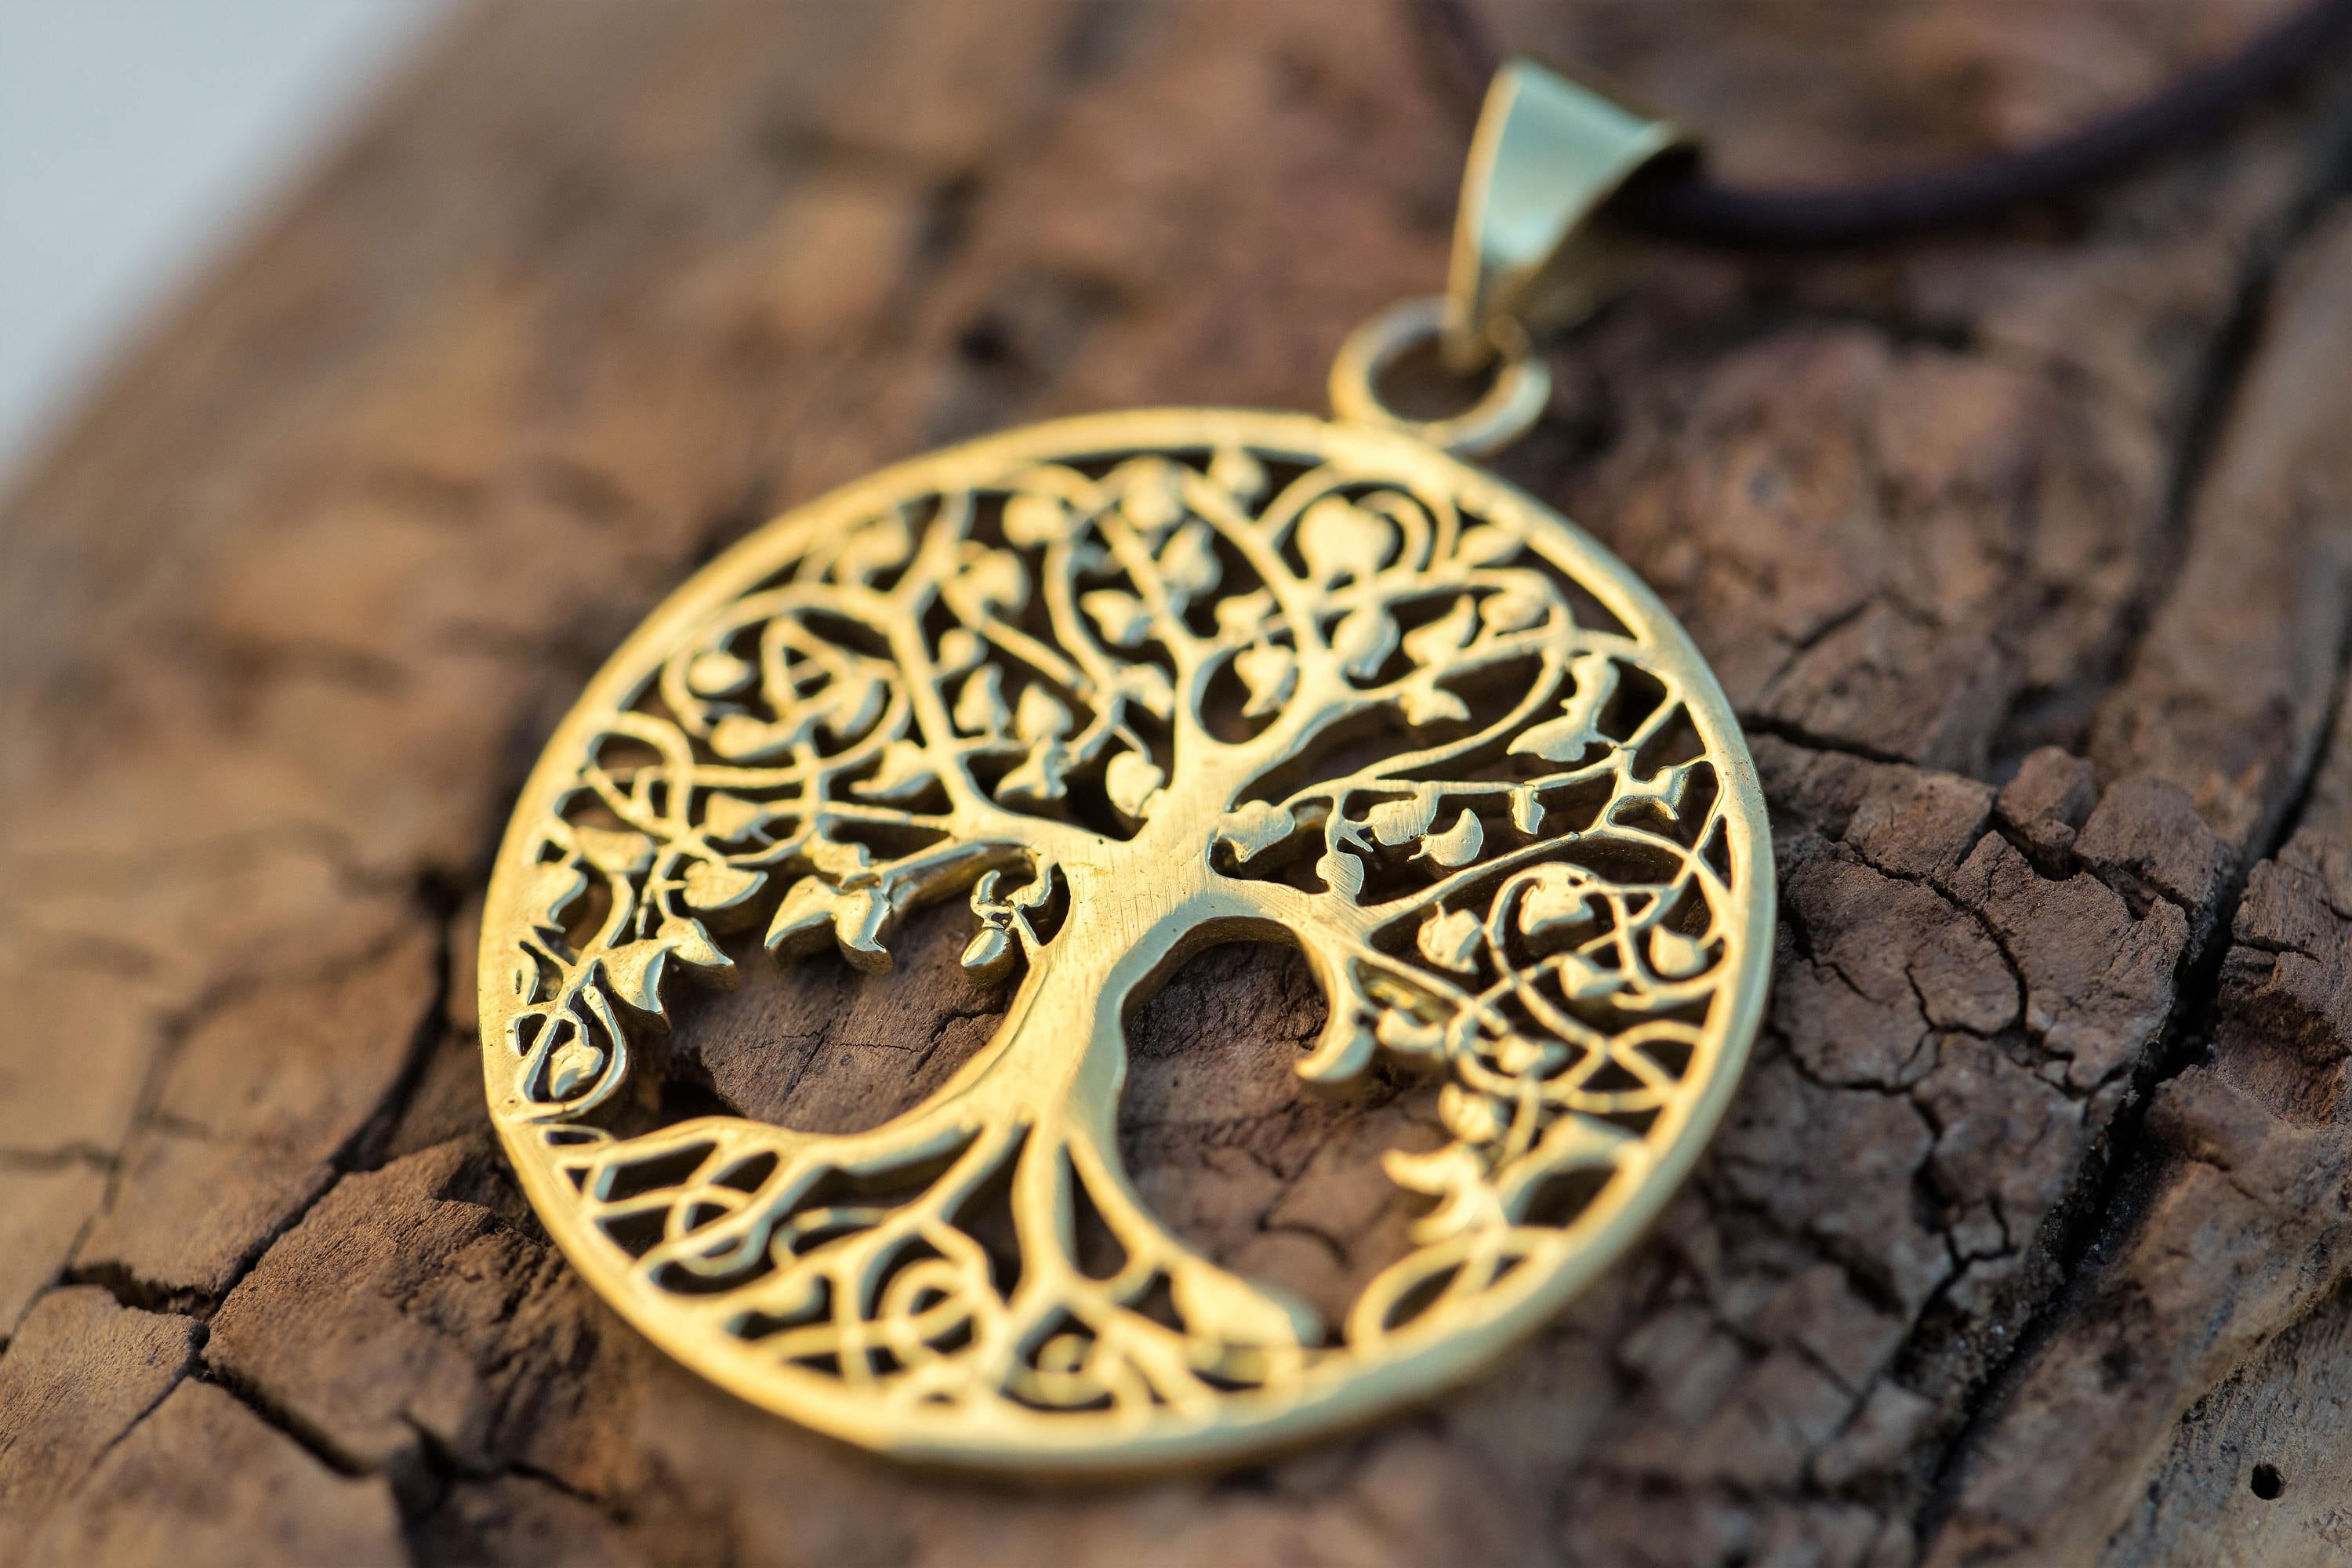 Celtic Tree of Life Pendant 10K Rose Gold and Silver — Basil-Ltd: Irish & Celtic